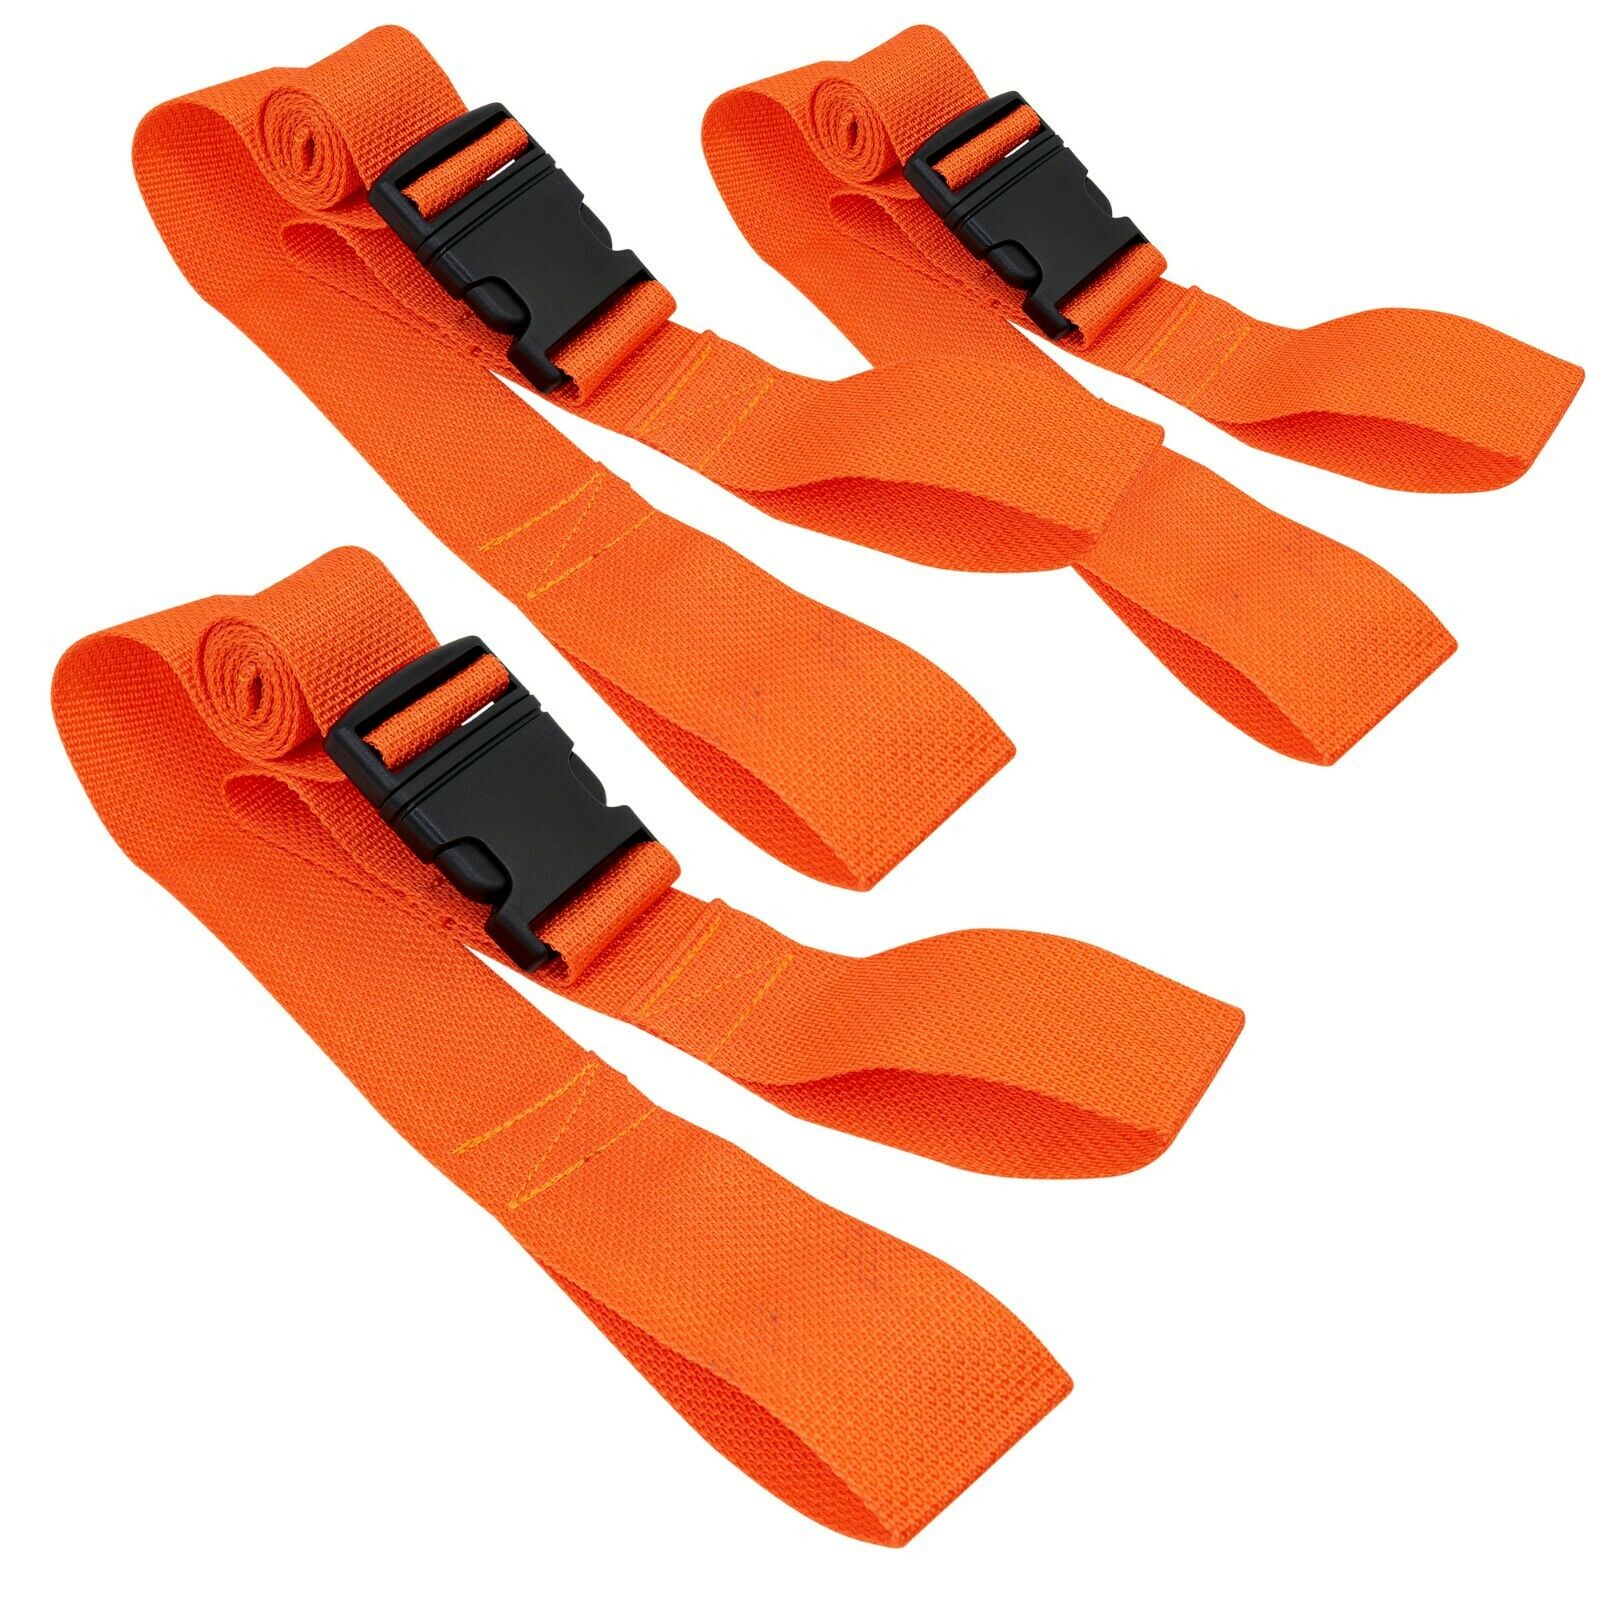 Line2design Spine Board Straps - Disposable Backboard Straps Pack Of 3 - Orange